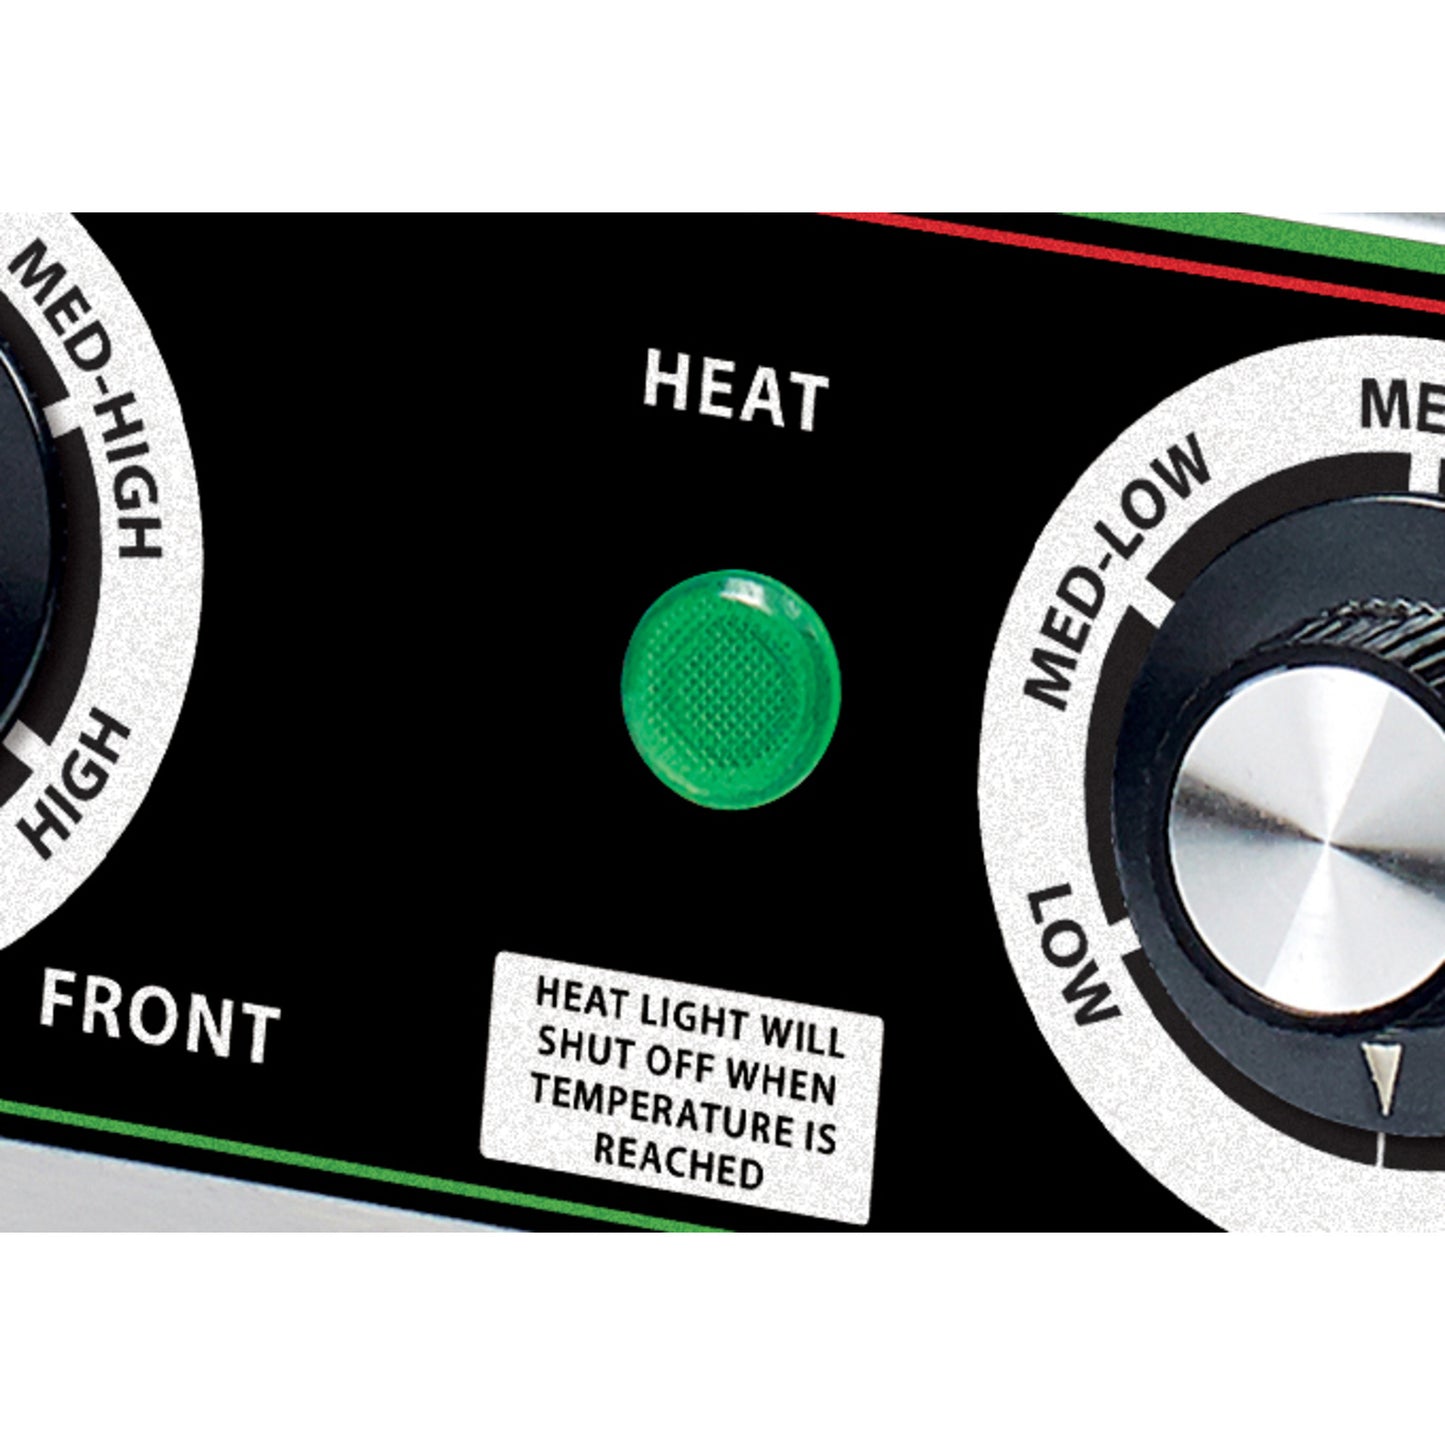 EHDG-P8 - Green Indicator Light for EHDG